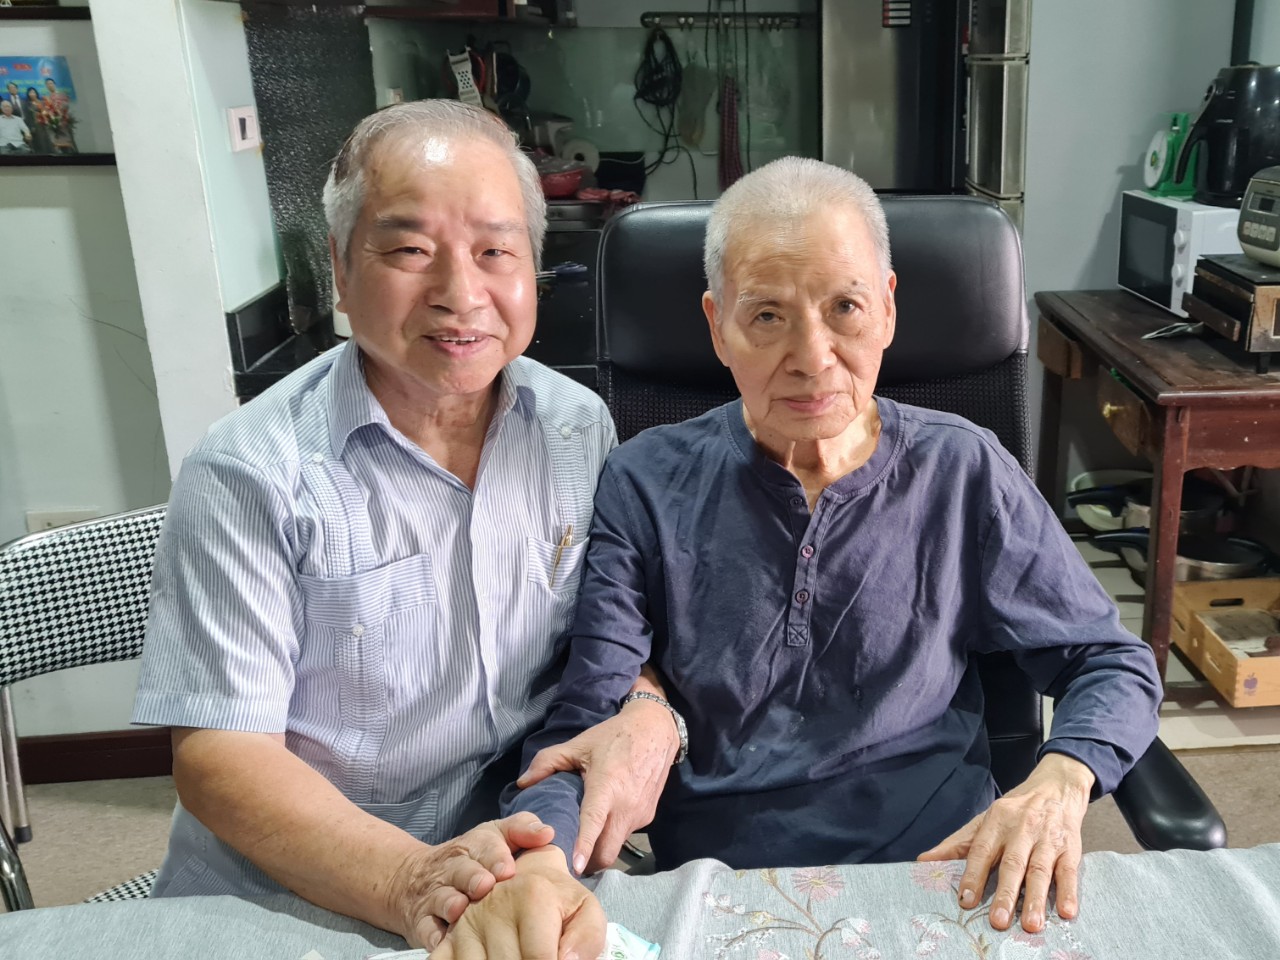 Cuối năm 2020, TS Nguyễn Kim Sơn (trái) đến thăm GS Trần Phương (phải) khi ông còn minh mẫn